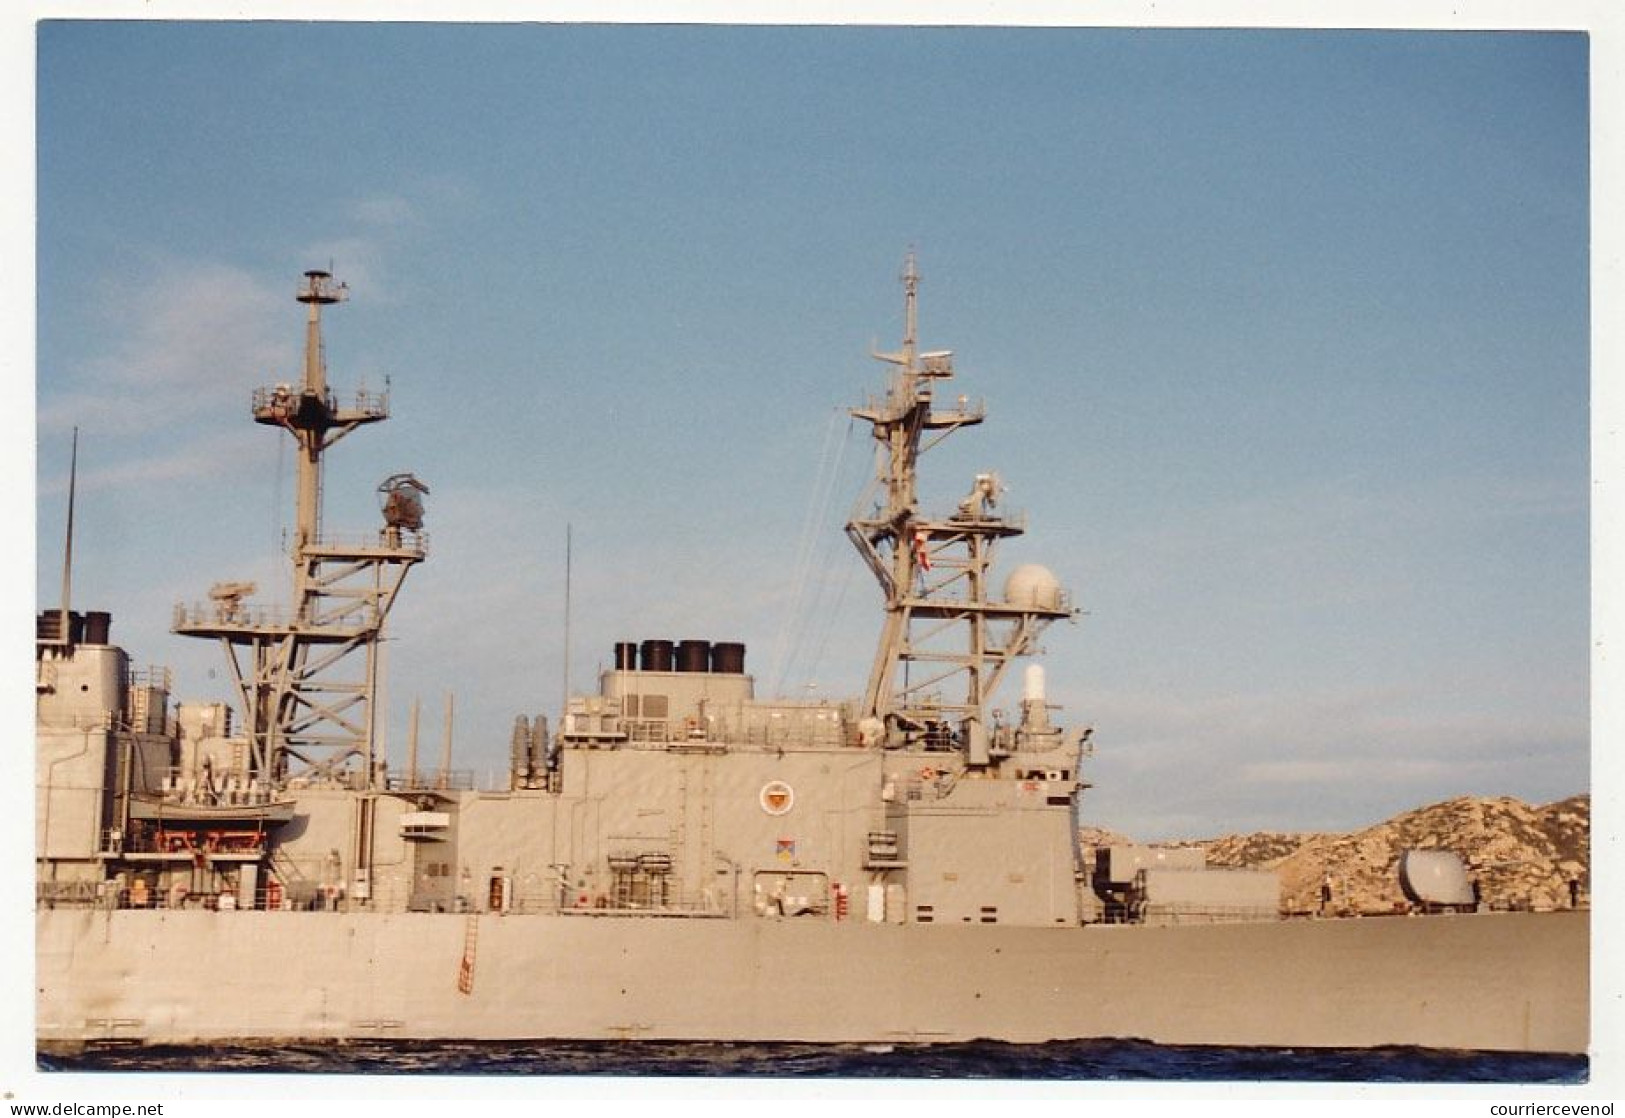 10 photos couleur format env. 10cm X 15cm - Destroyer USS Deyo (DD 989) - 14/11/1981